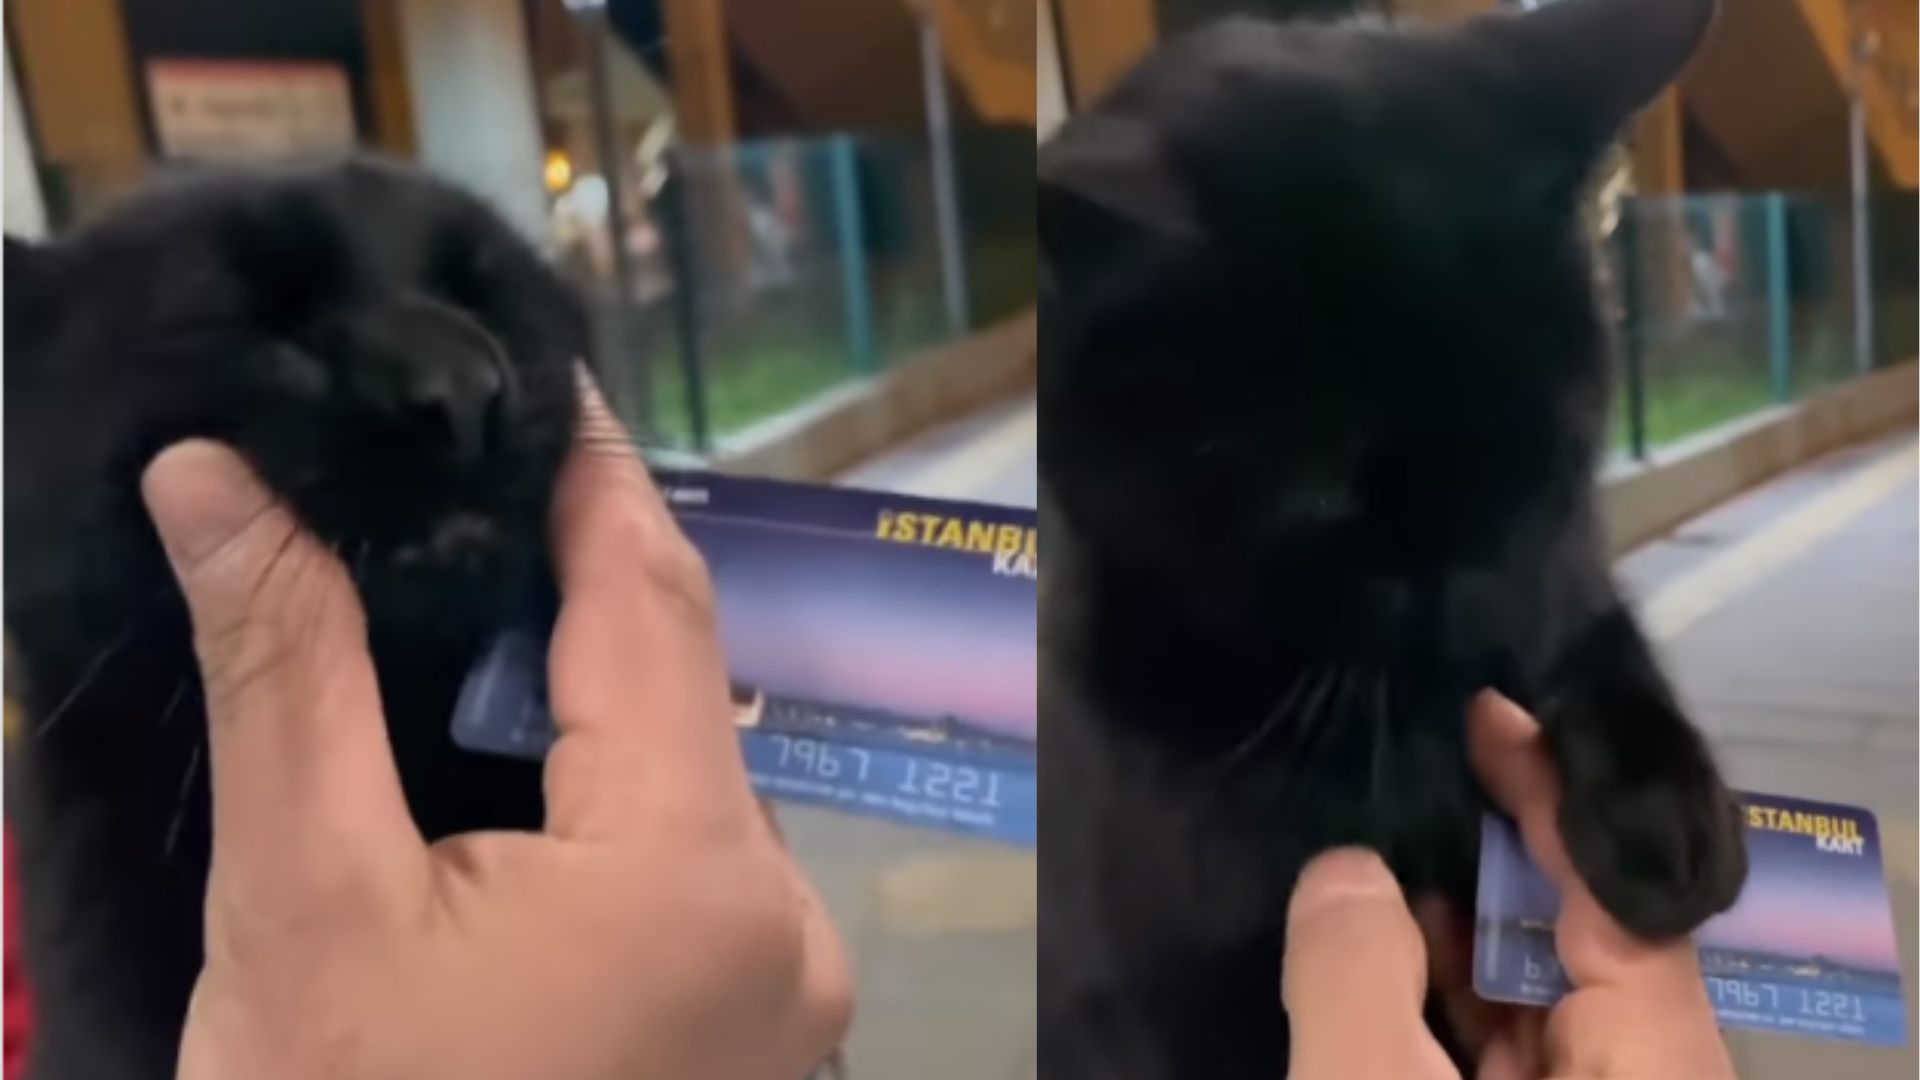 r transmite ao vivo vídeo no qual espanca gato de estimação – Metro  World News Brasil